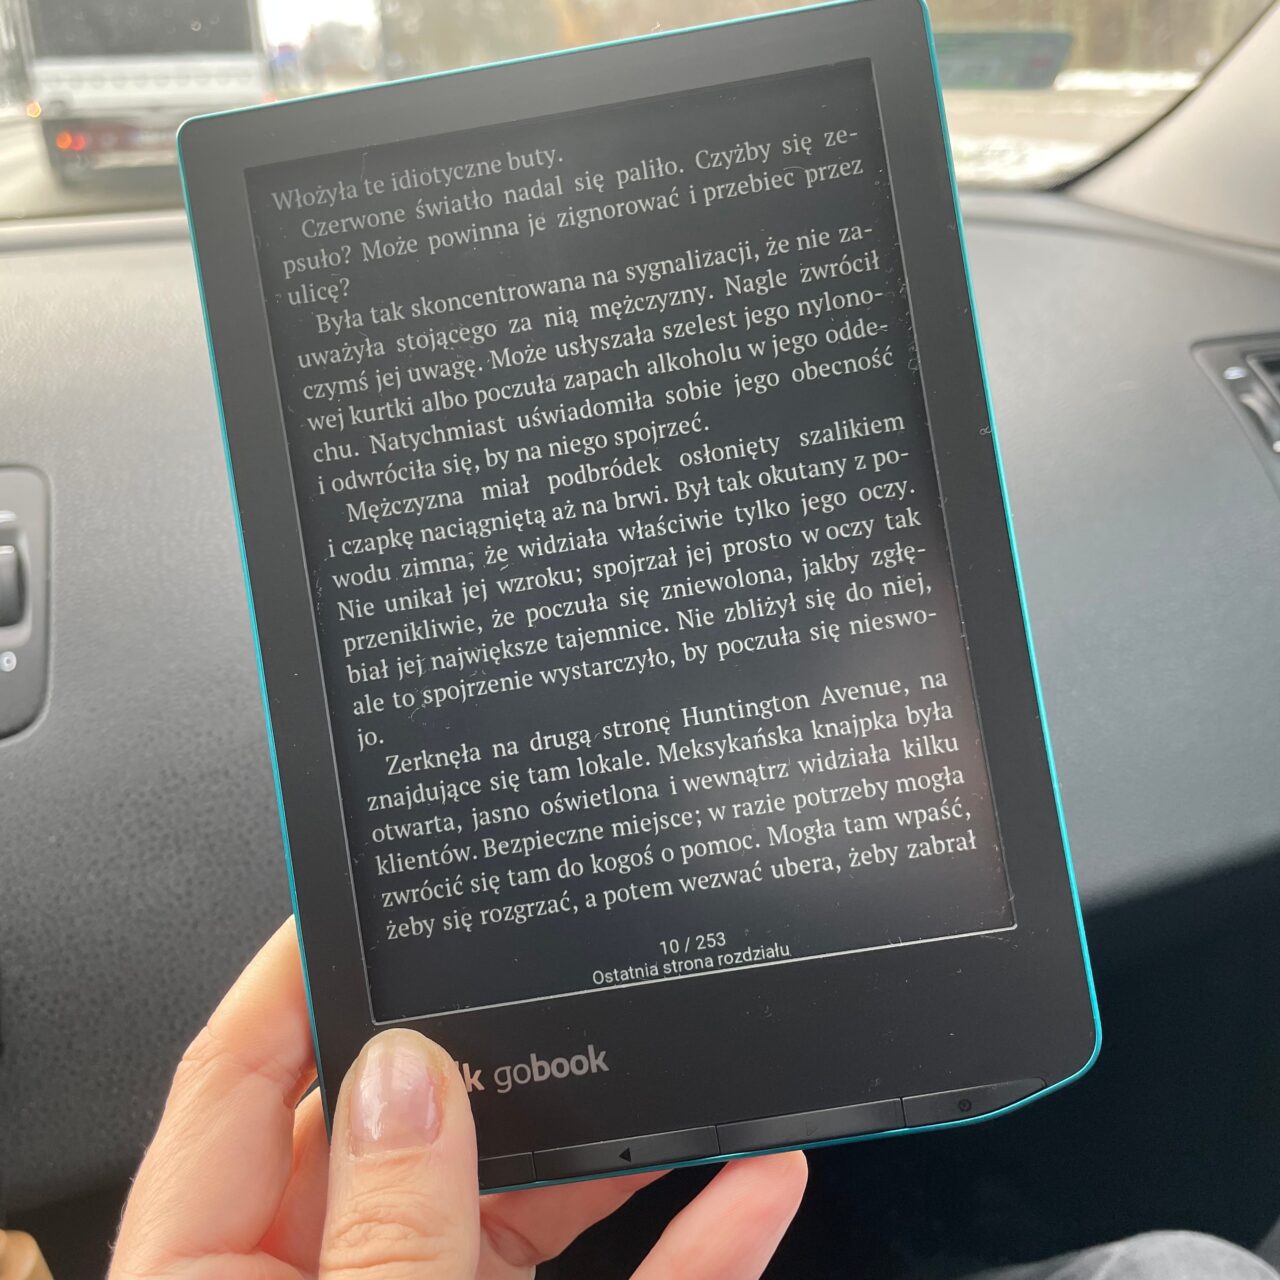 Osoba trzyma czytnik ebooków z włączonym tekstem, w tle widoczne jest wnętrze samochodu oraz okno z rozmytym obrazem jadących pojazdów.